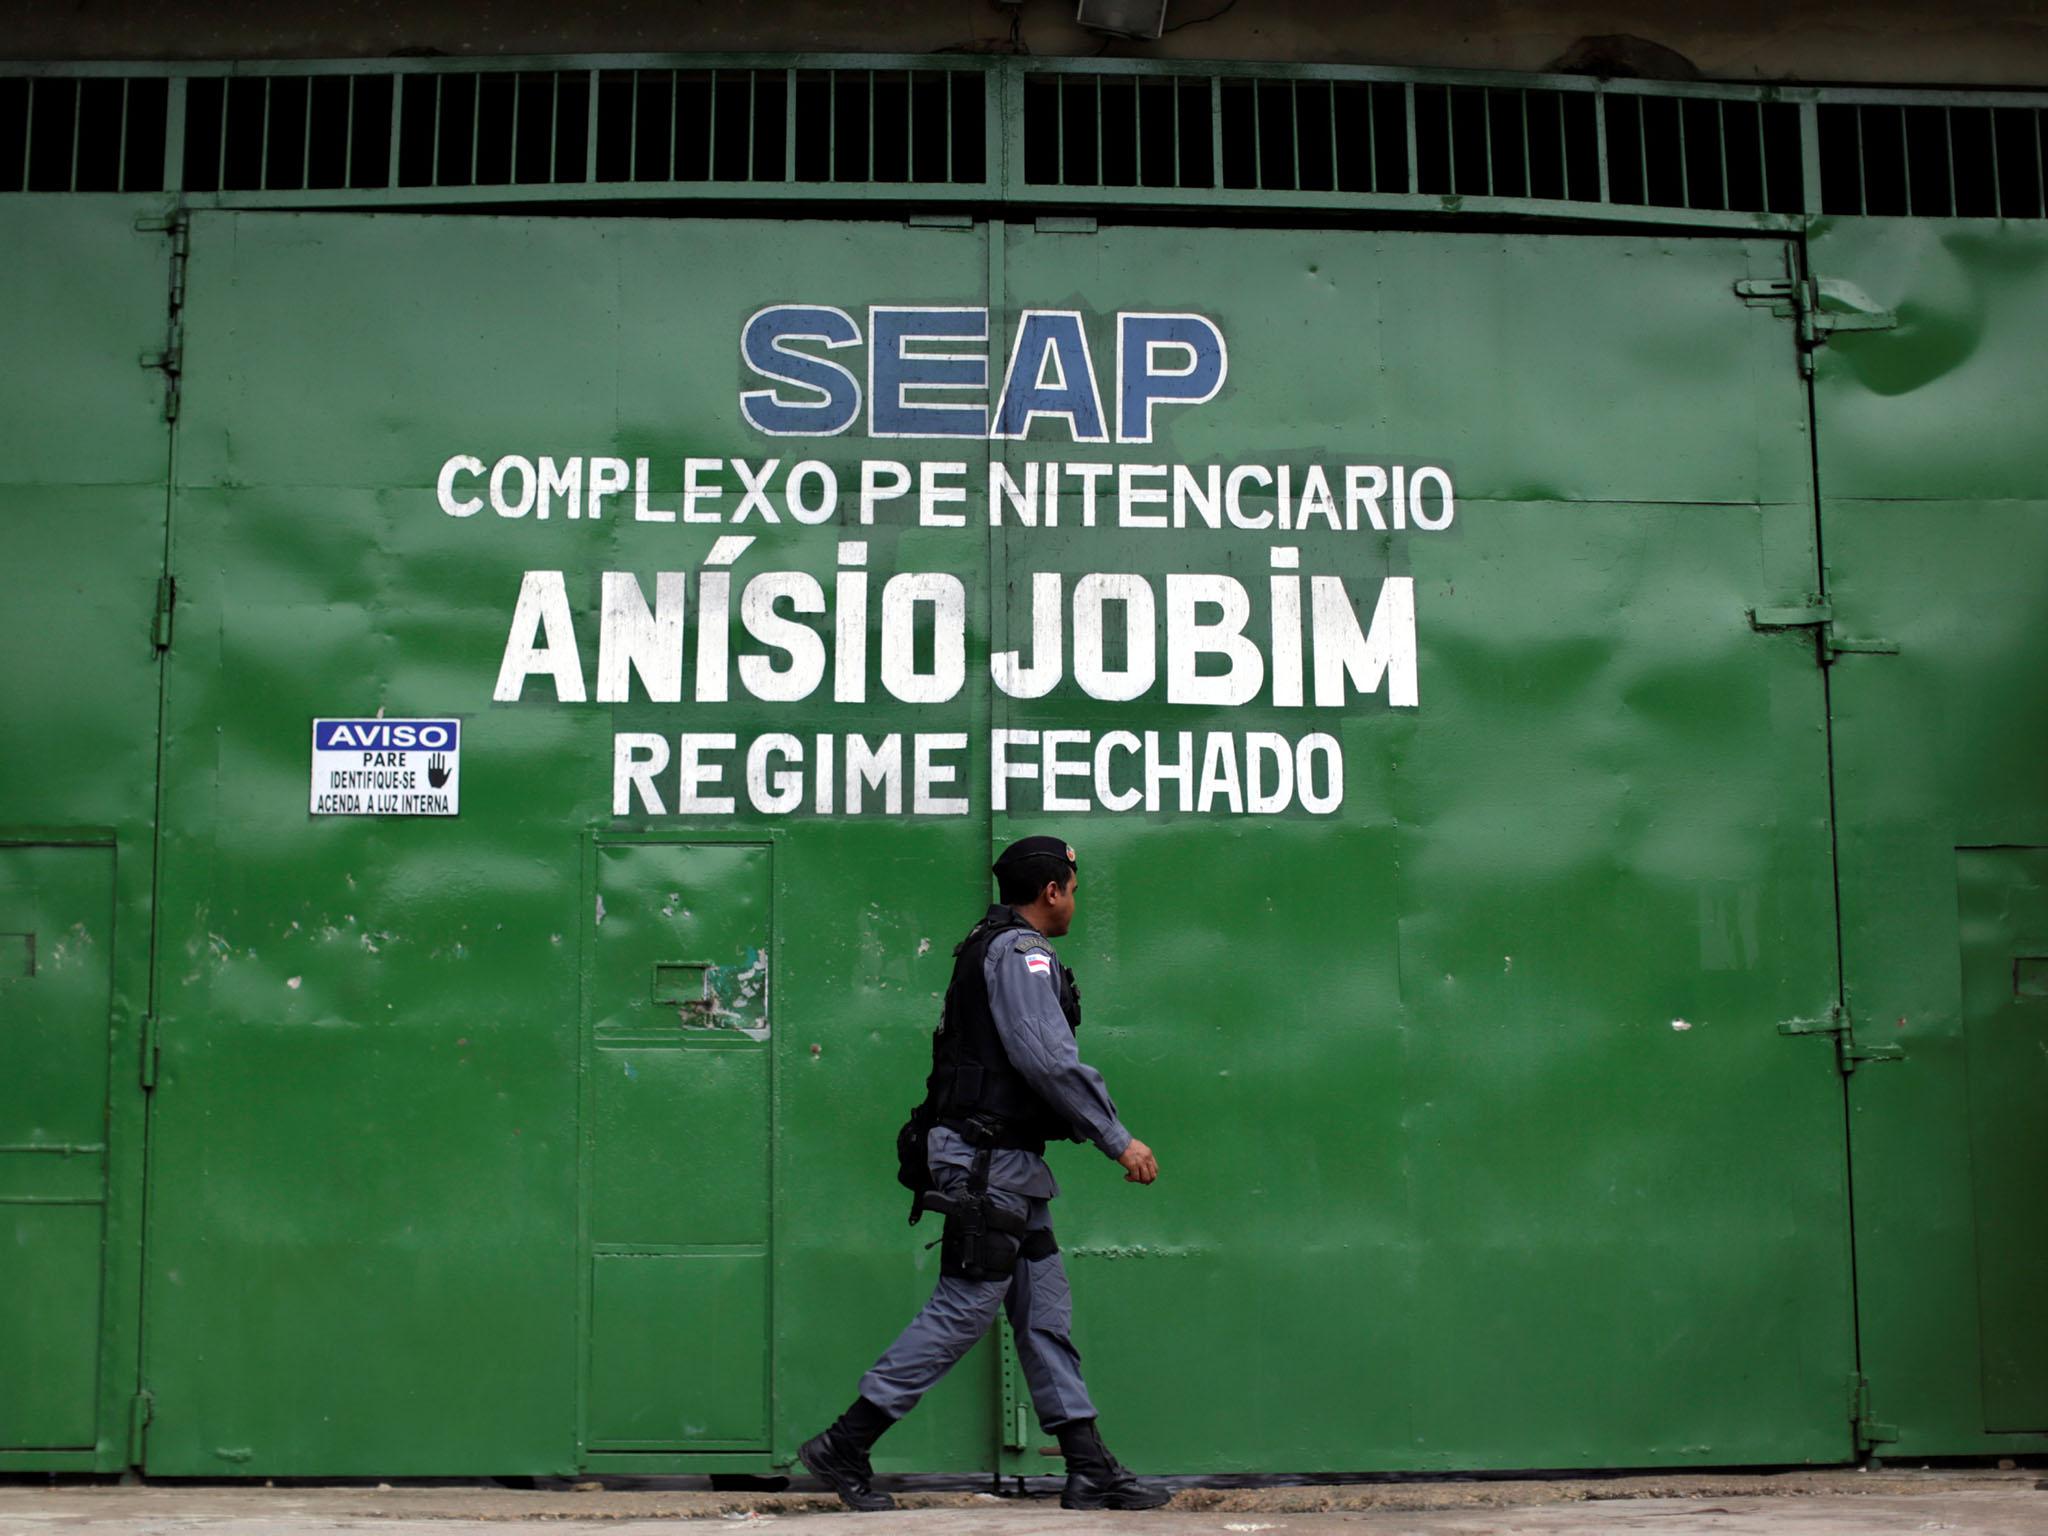 Nearly 60 killed in Brazil prison riot while dozens of inmates escape